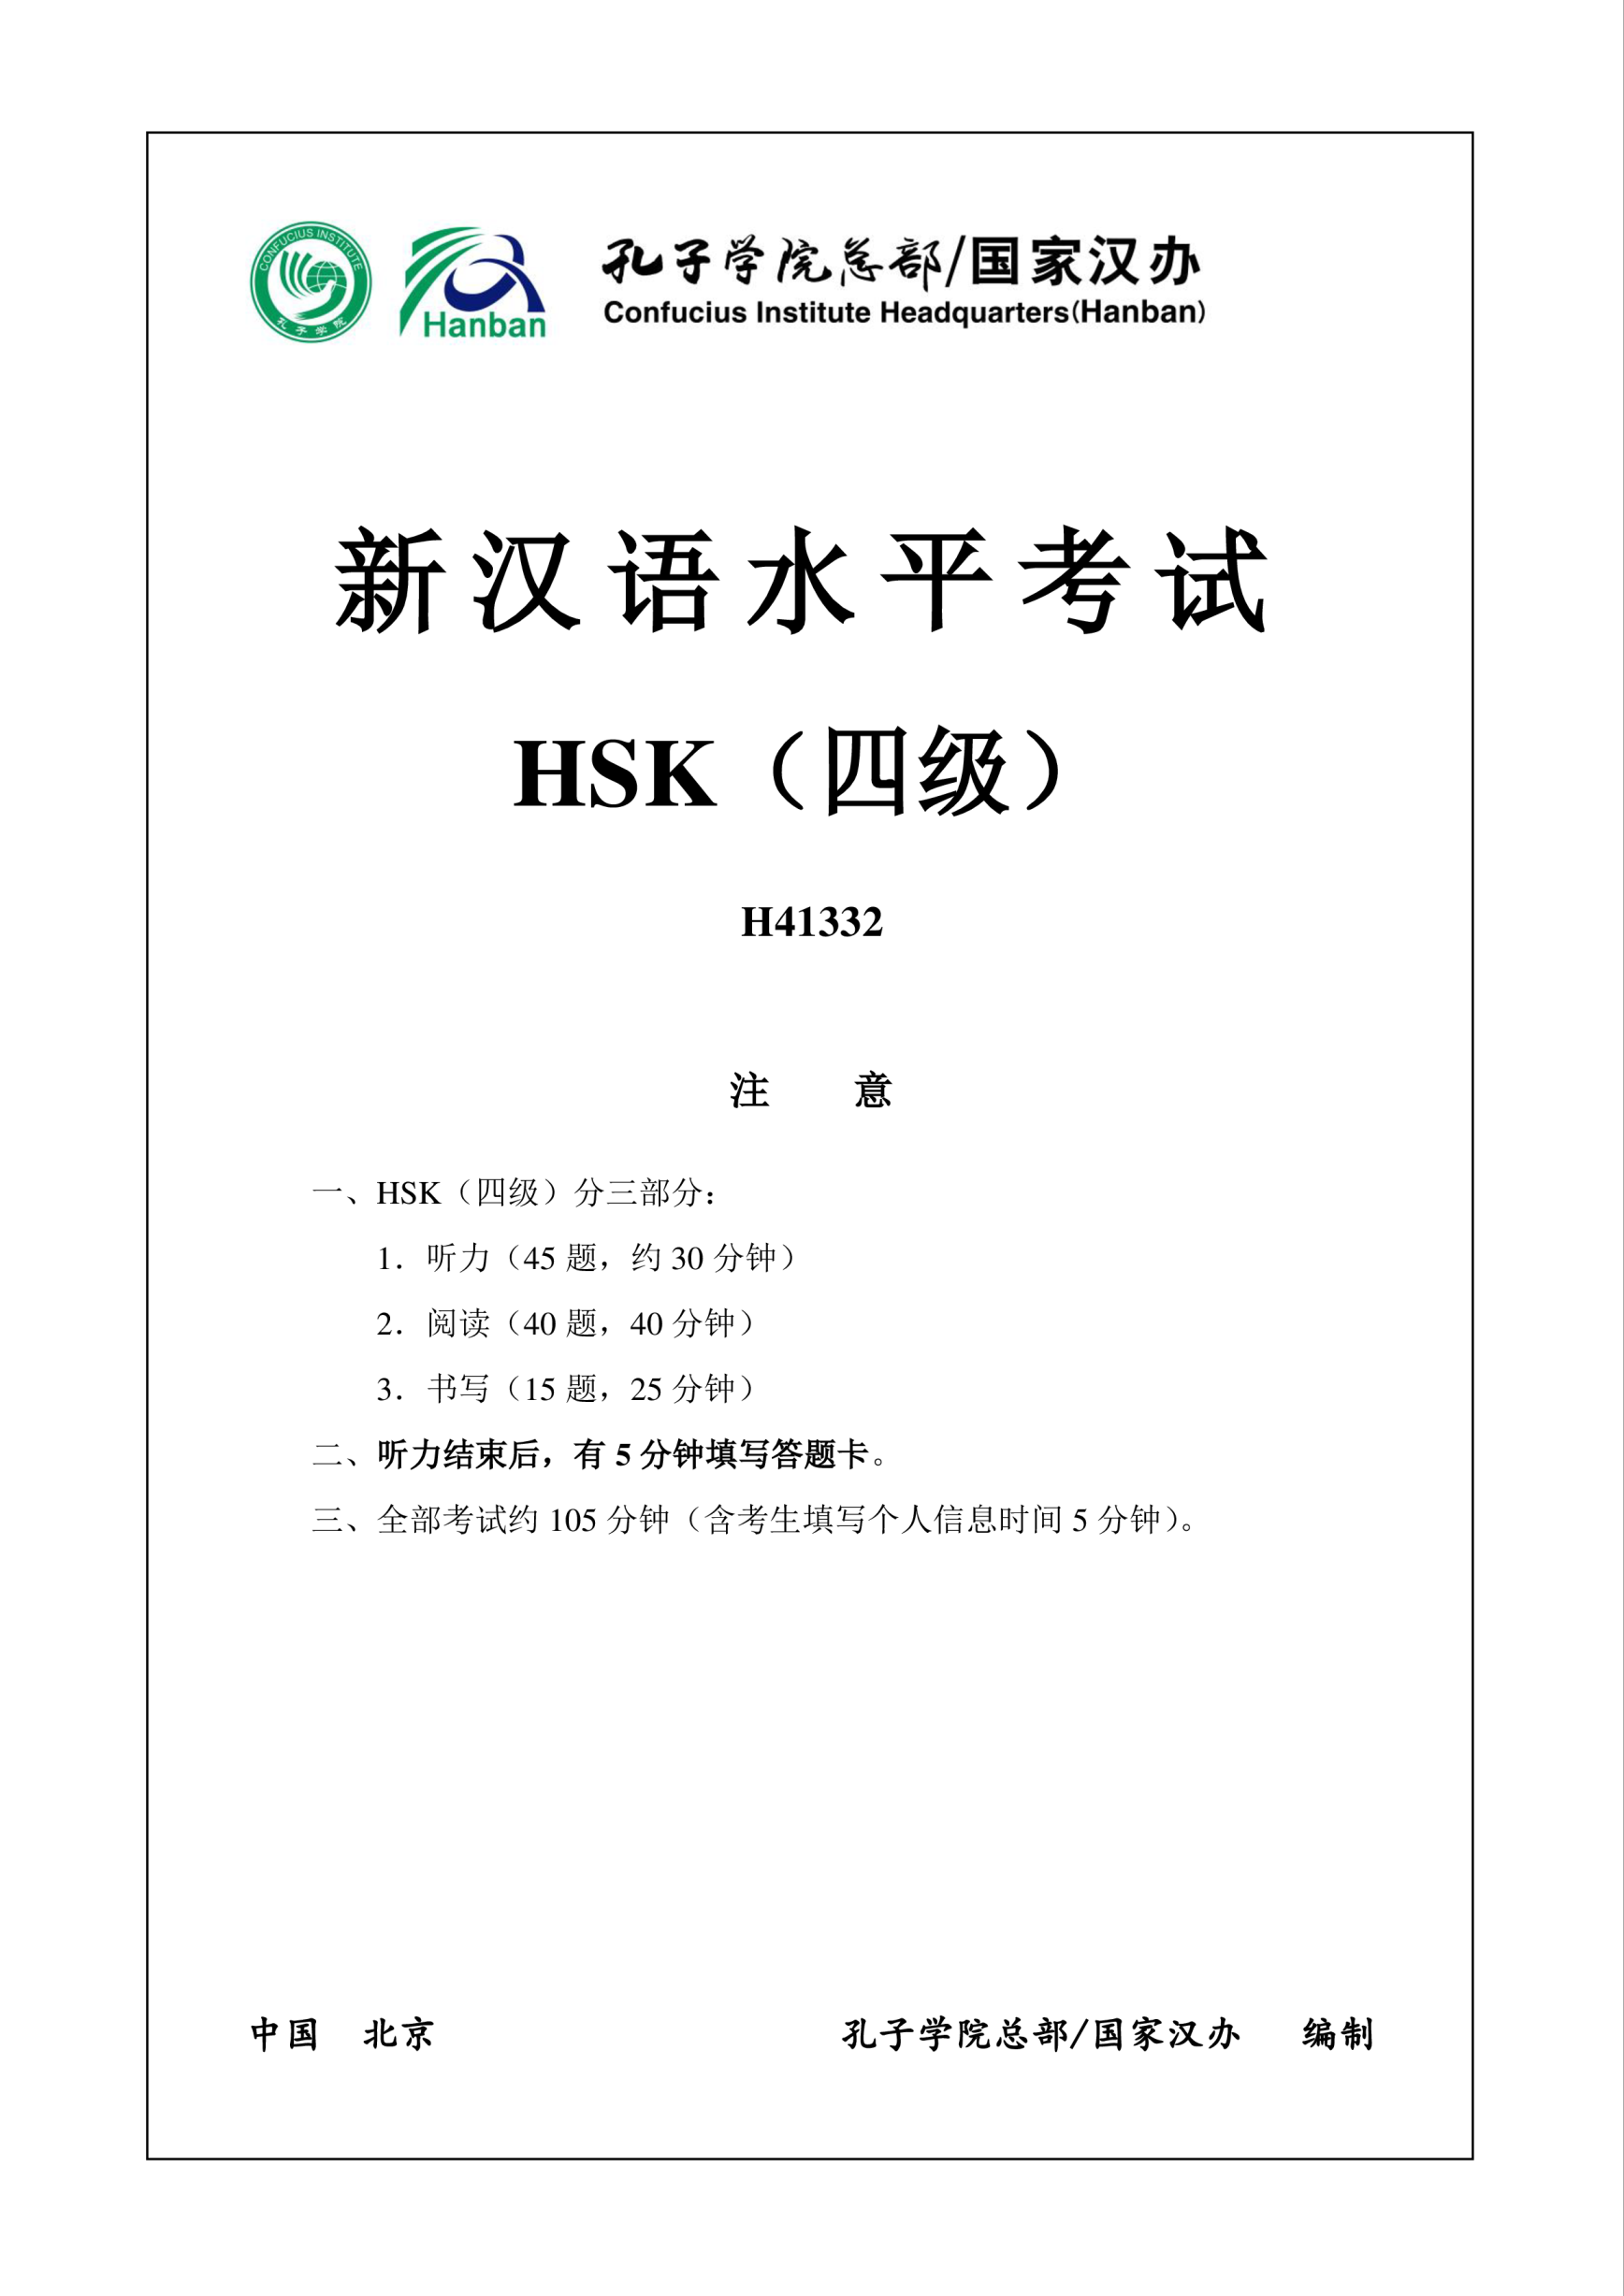 Vorschaubild der VorlageHSK4 Chinese Exam incl Audio and Answers H41332